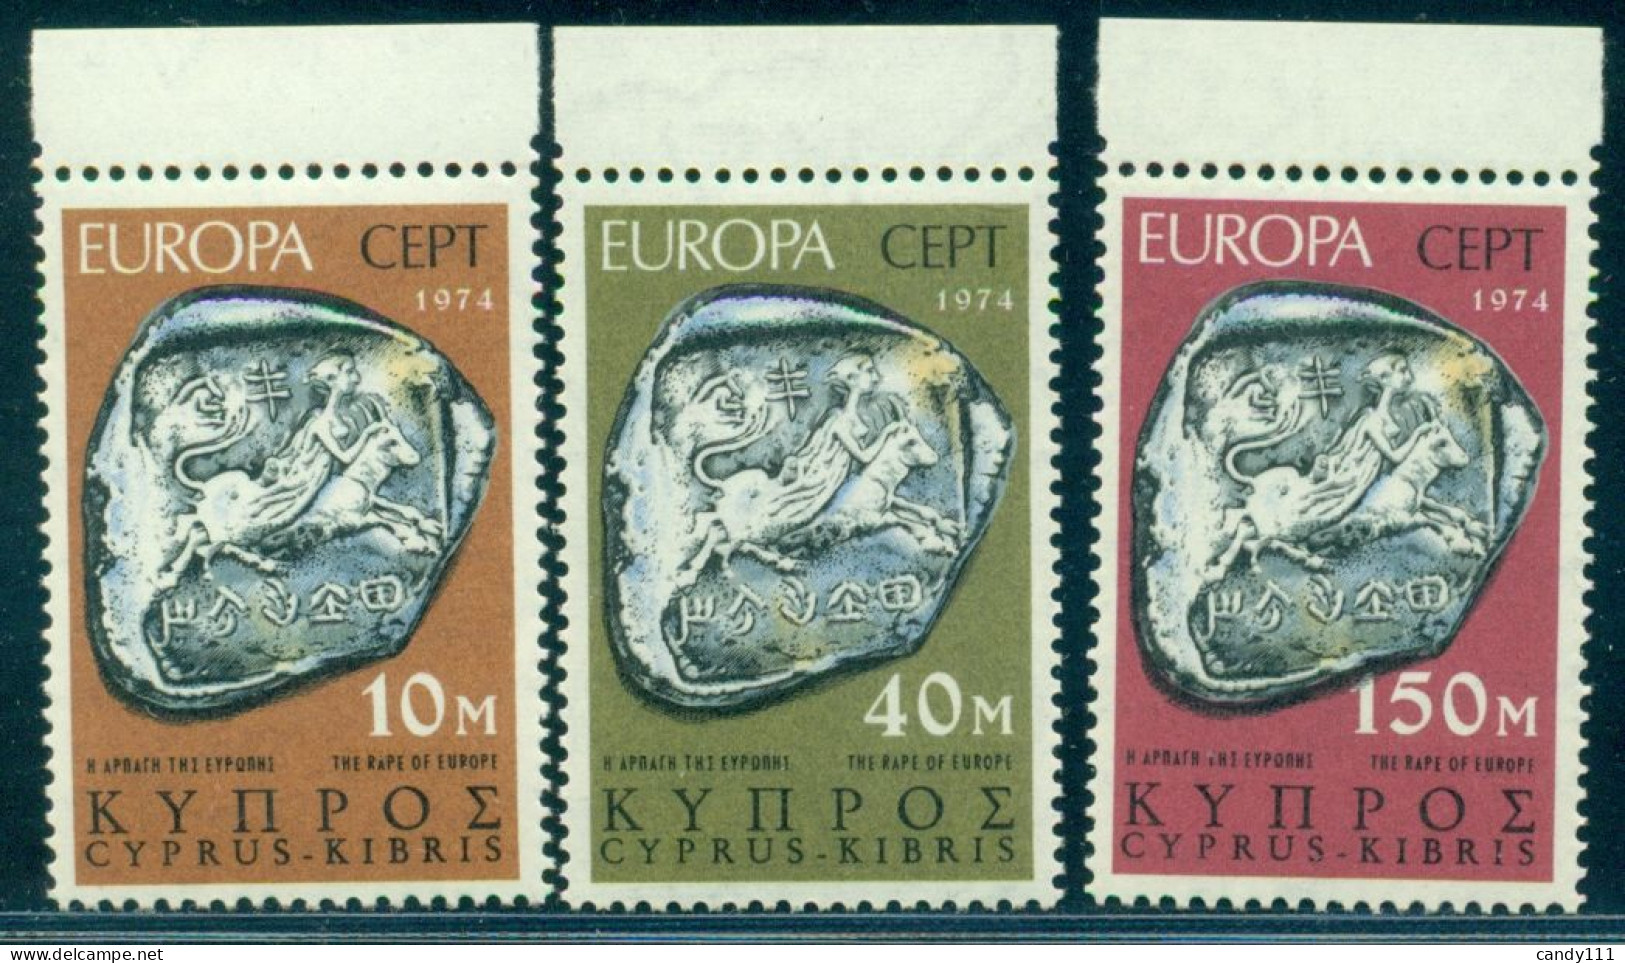 1974 Europa CEPT,Silver Coin,Rape Of Europa,Cyprus,409,MNH - 1974